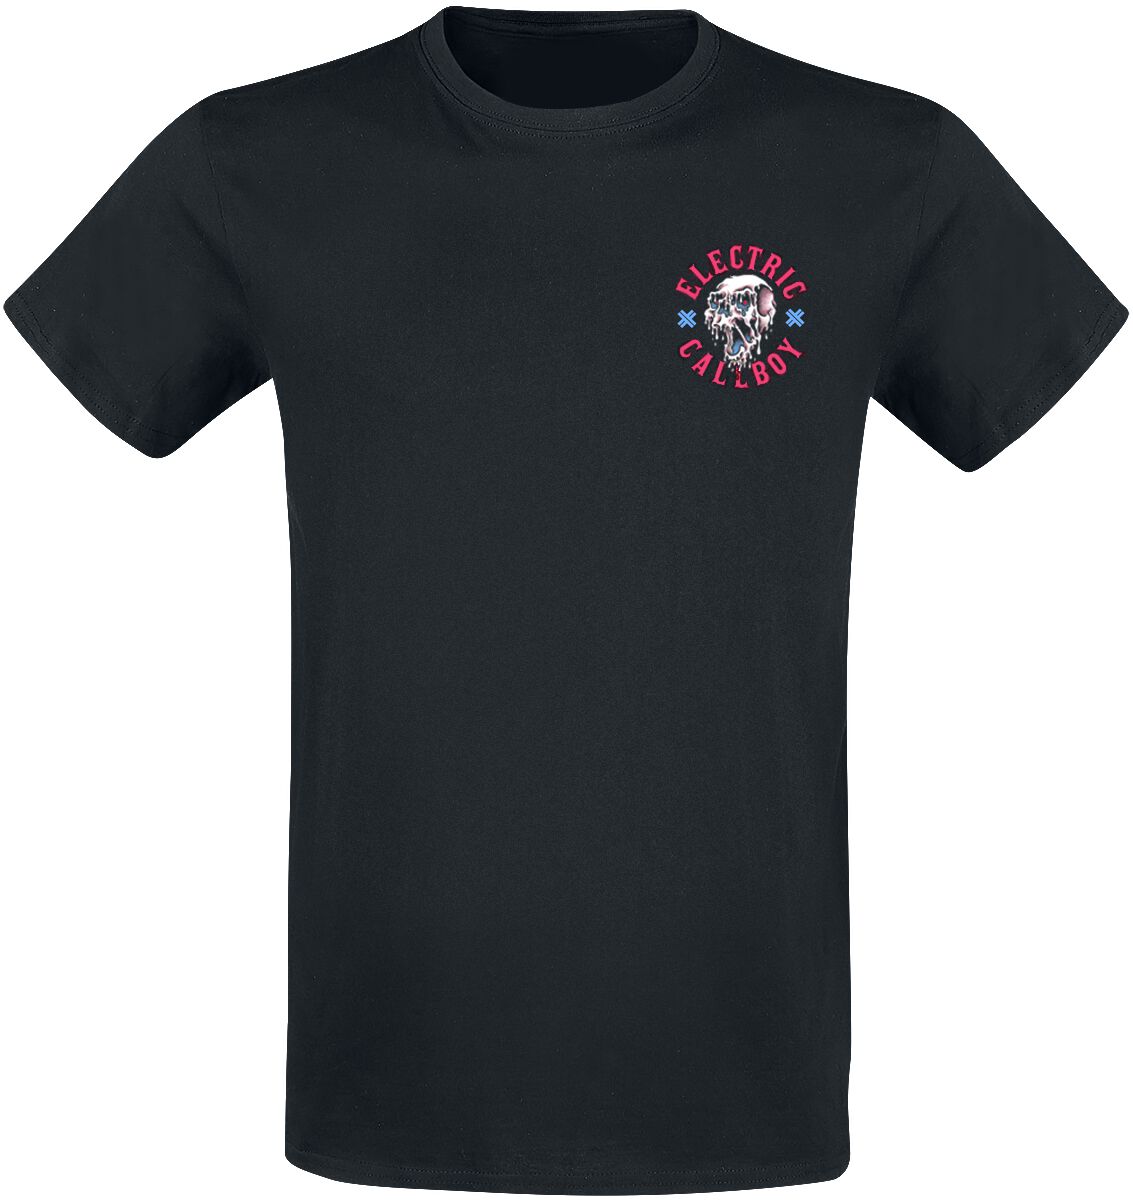 Electric Callboy T-Shirt - Let`s Do It Again - S bis 3XL - für Männer - Größe XXL - schwarz  - Lizenziertes Merchandise!